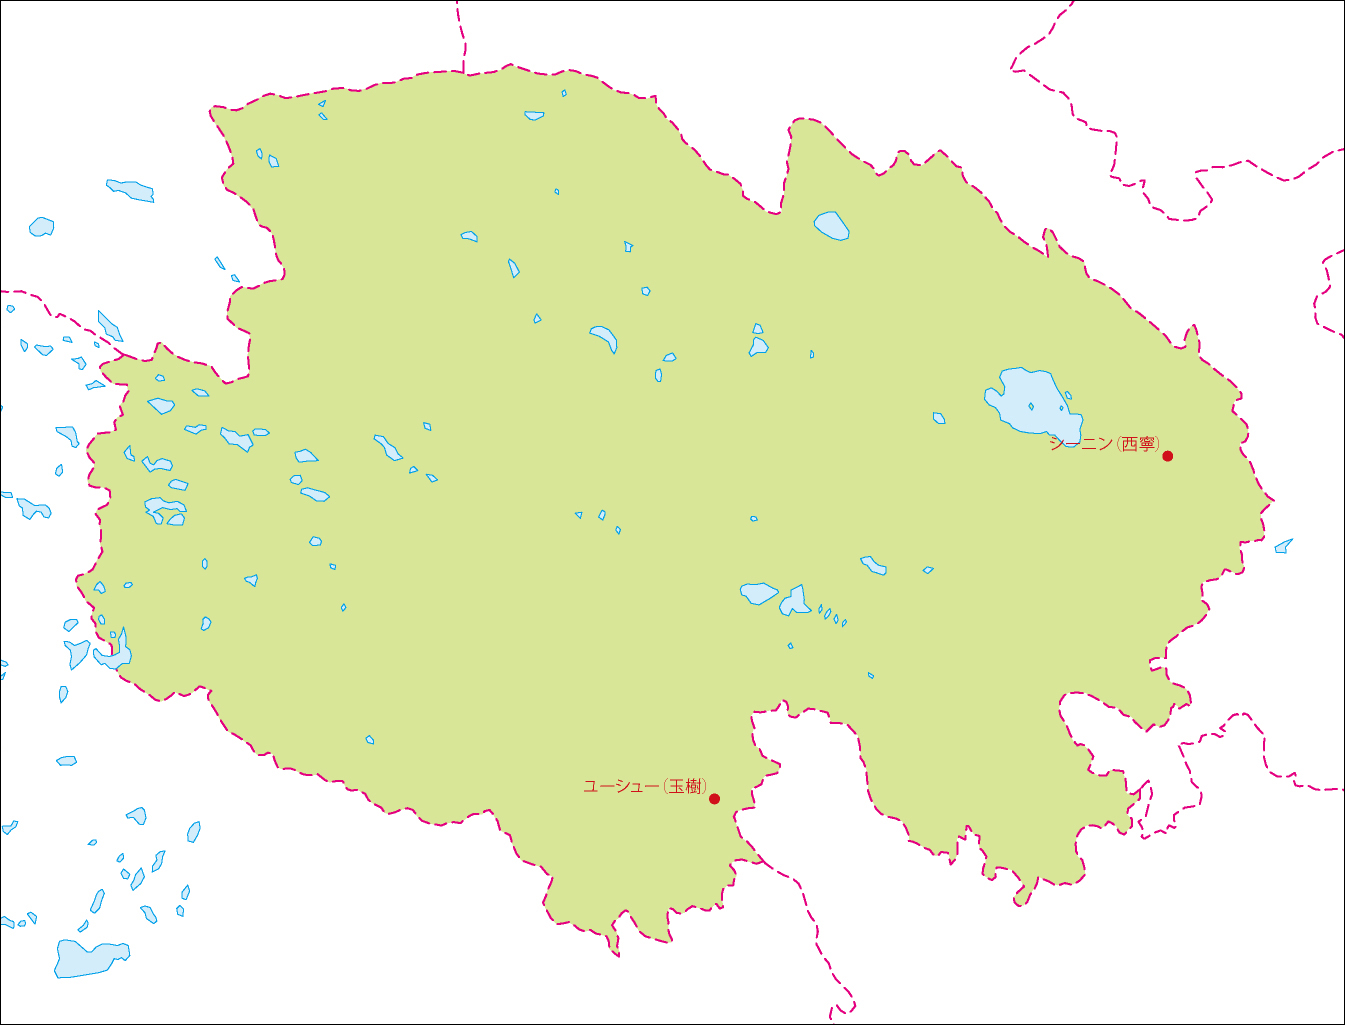 青海省地図(主な都市あり)のフリーデータの画像